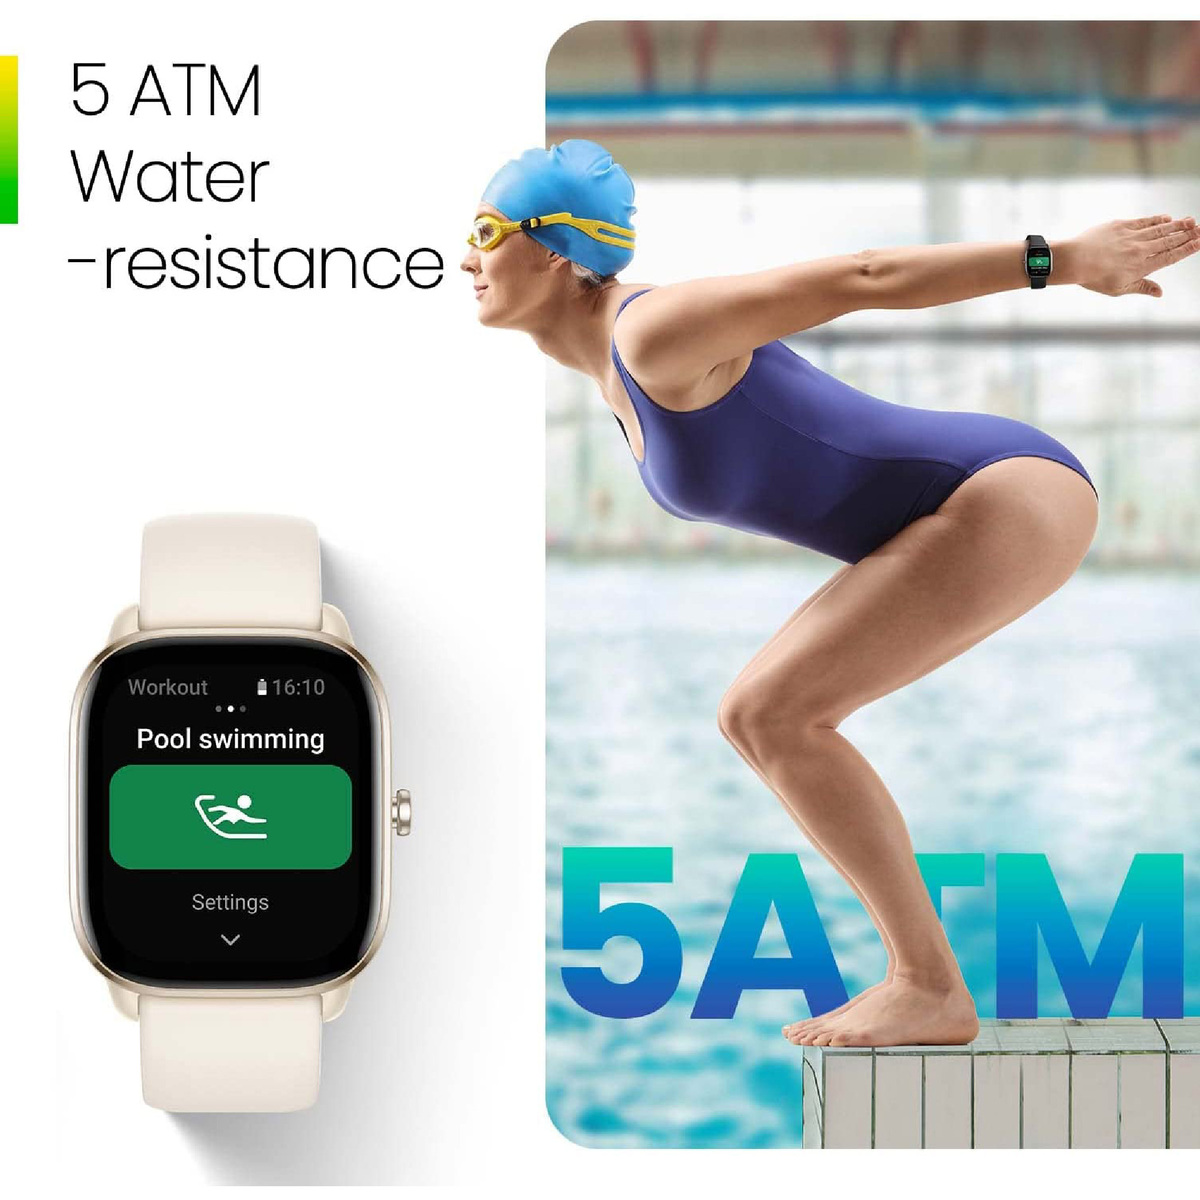 أمازفيت جي تي اس 4 ميني ساعة ذكية للنساء والرجال، أليكسا مدمج، ، GPS ، جهاز تتبع اللياقة البدنية مع 120+ وضع رياضي، بطارية تدوم 15 يومًا، مراقب الأكسجين في الدم معدل ضربات القلب، متوافق هاتف أندرويد مع آيفون - أسود